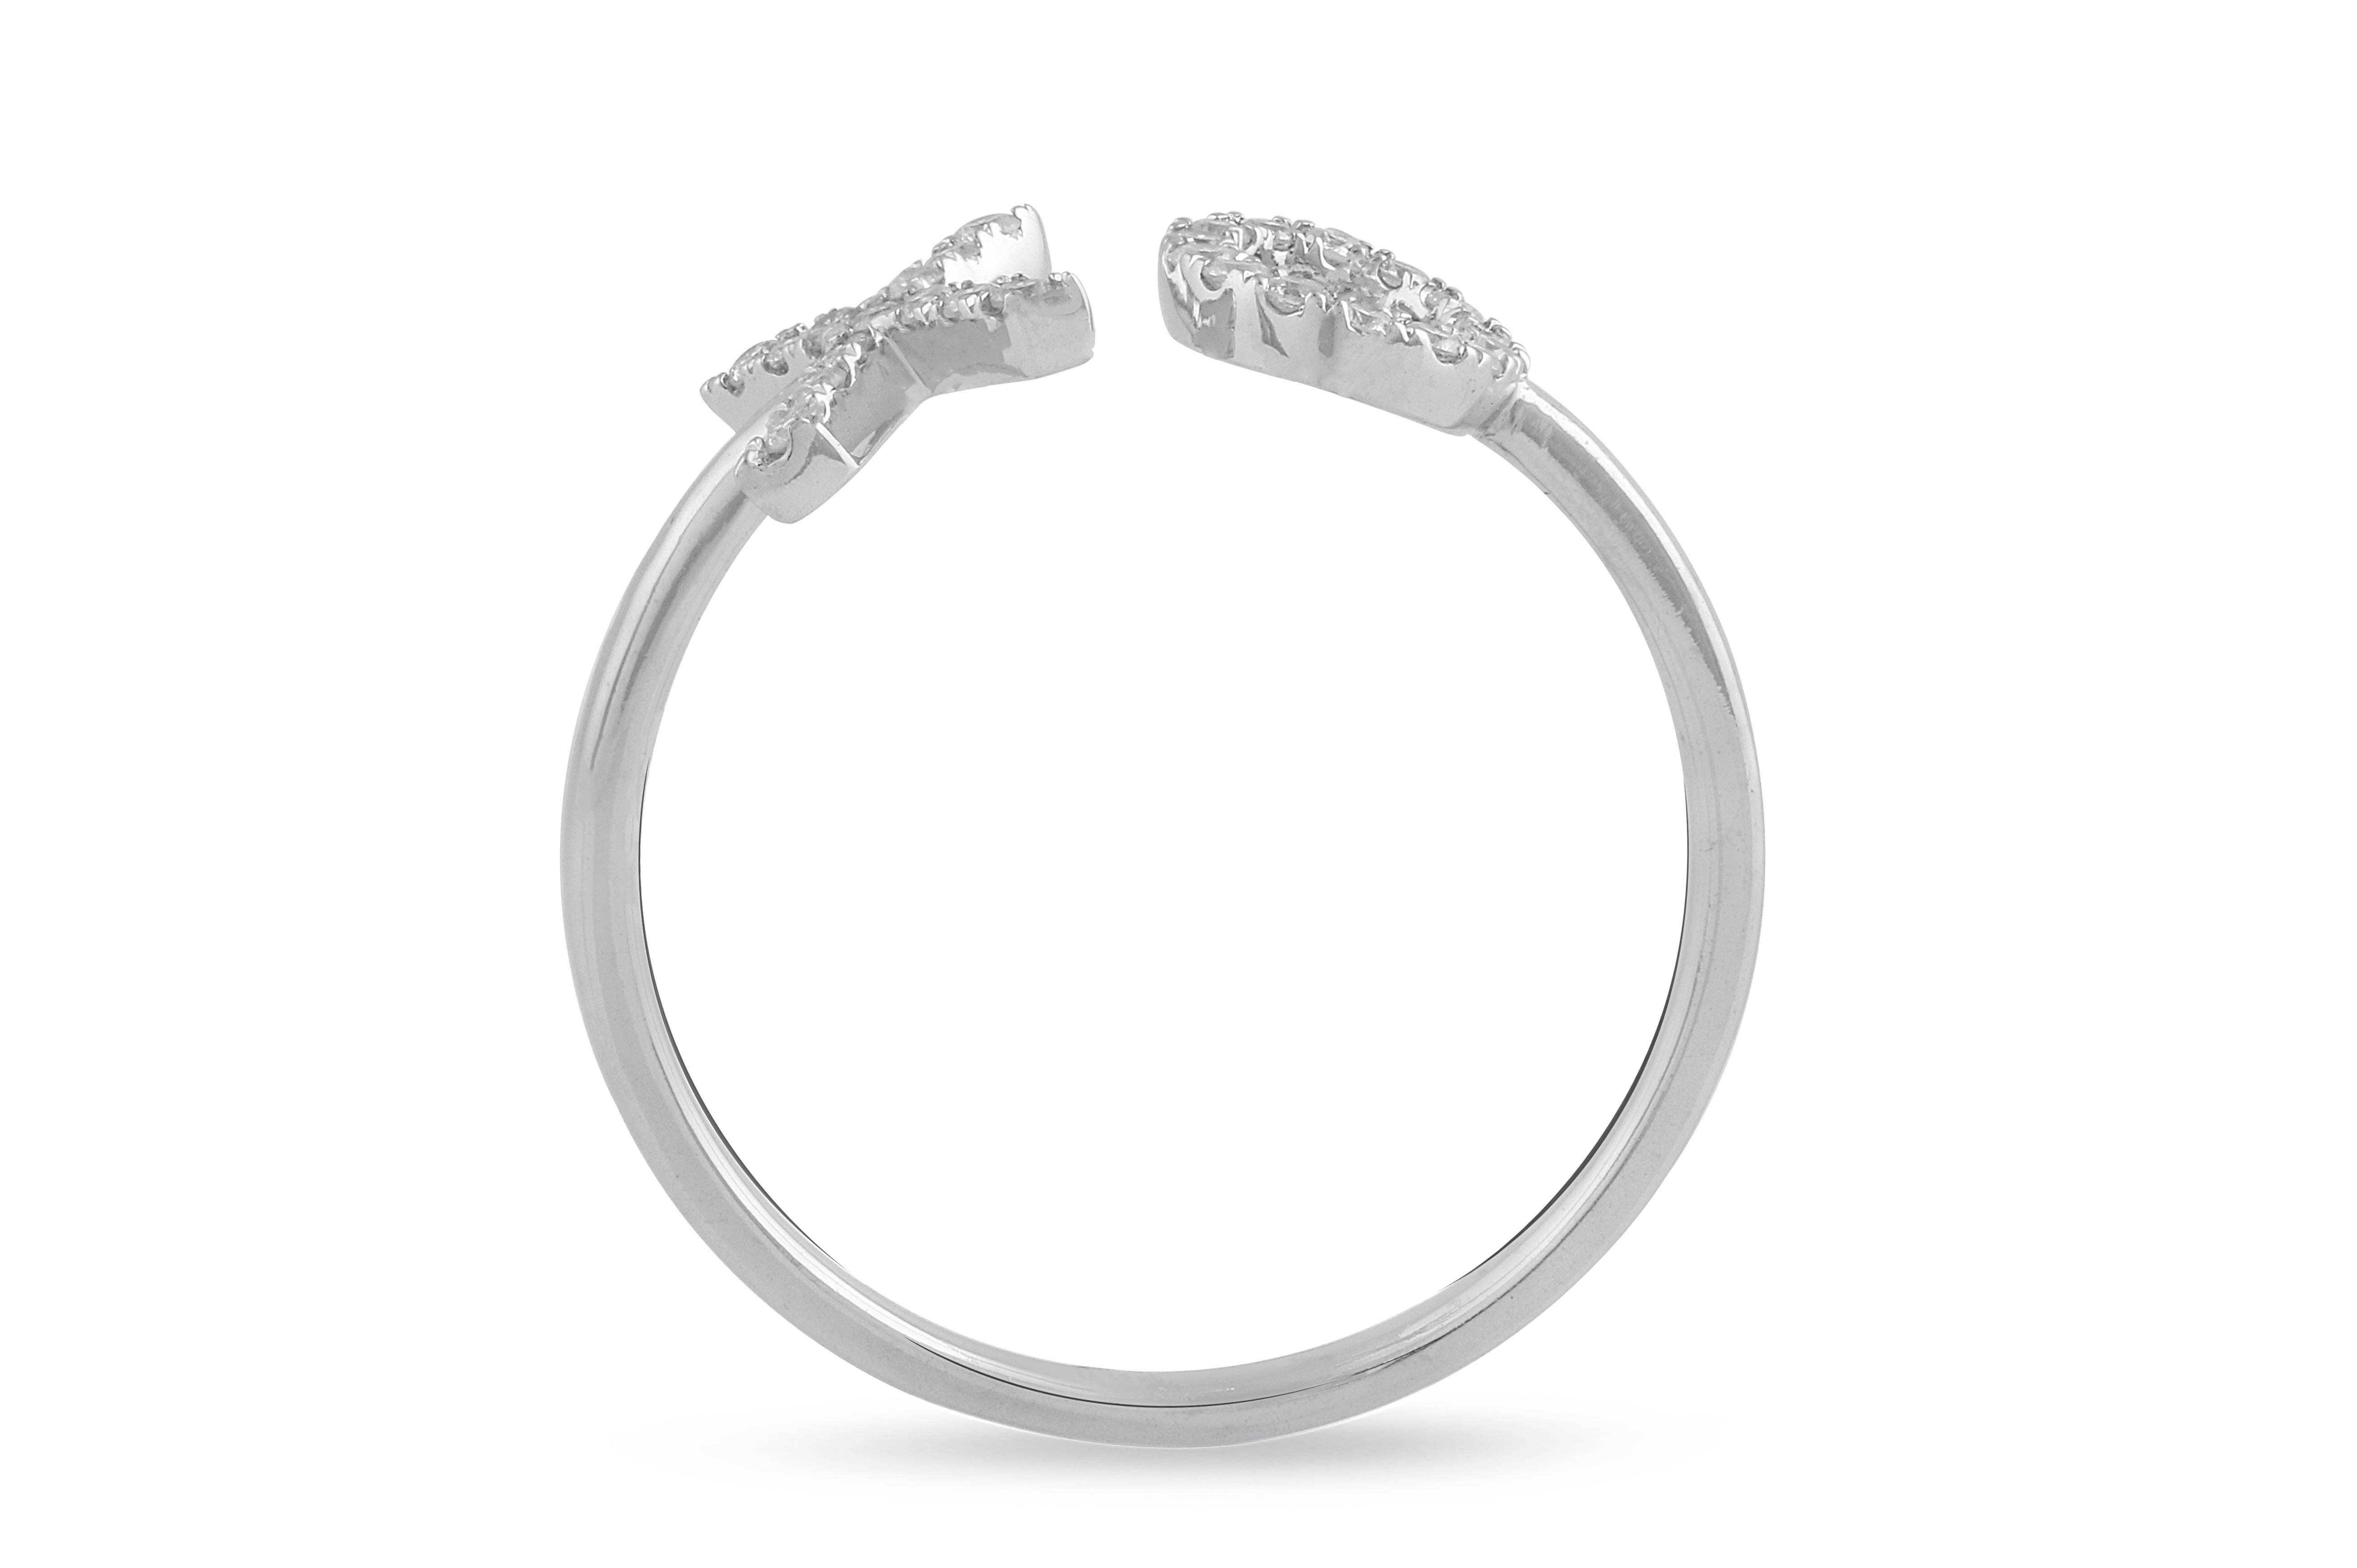 Unsere wunderschönen Diamantringe sind in die erstaunlichsten Designs eingefasst, die von modernen Schmuckstücken bis hin zu faszinierenden Klassikern reichen, und sie werden sicherlich die Romantik zwischen Ihnen und Ihrem Ehepartner wieder